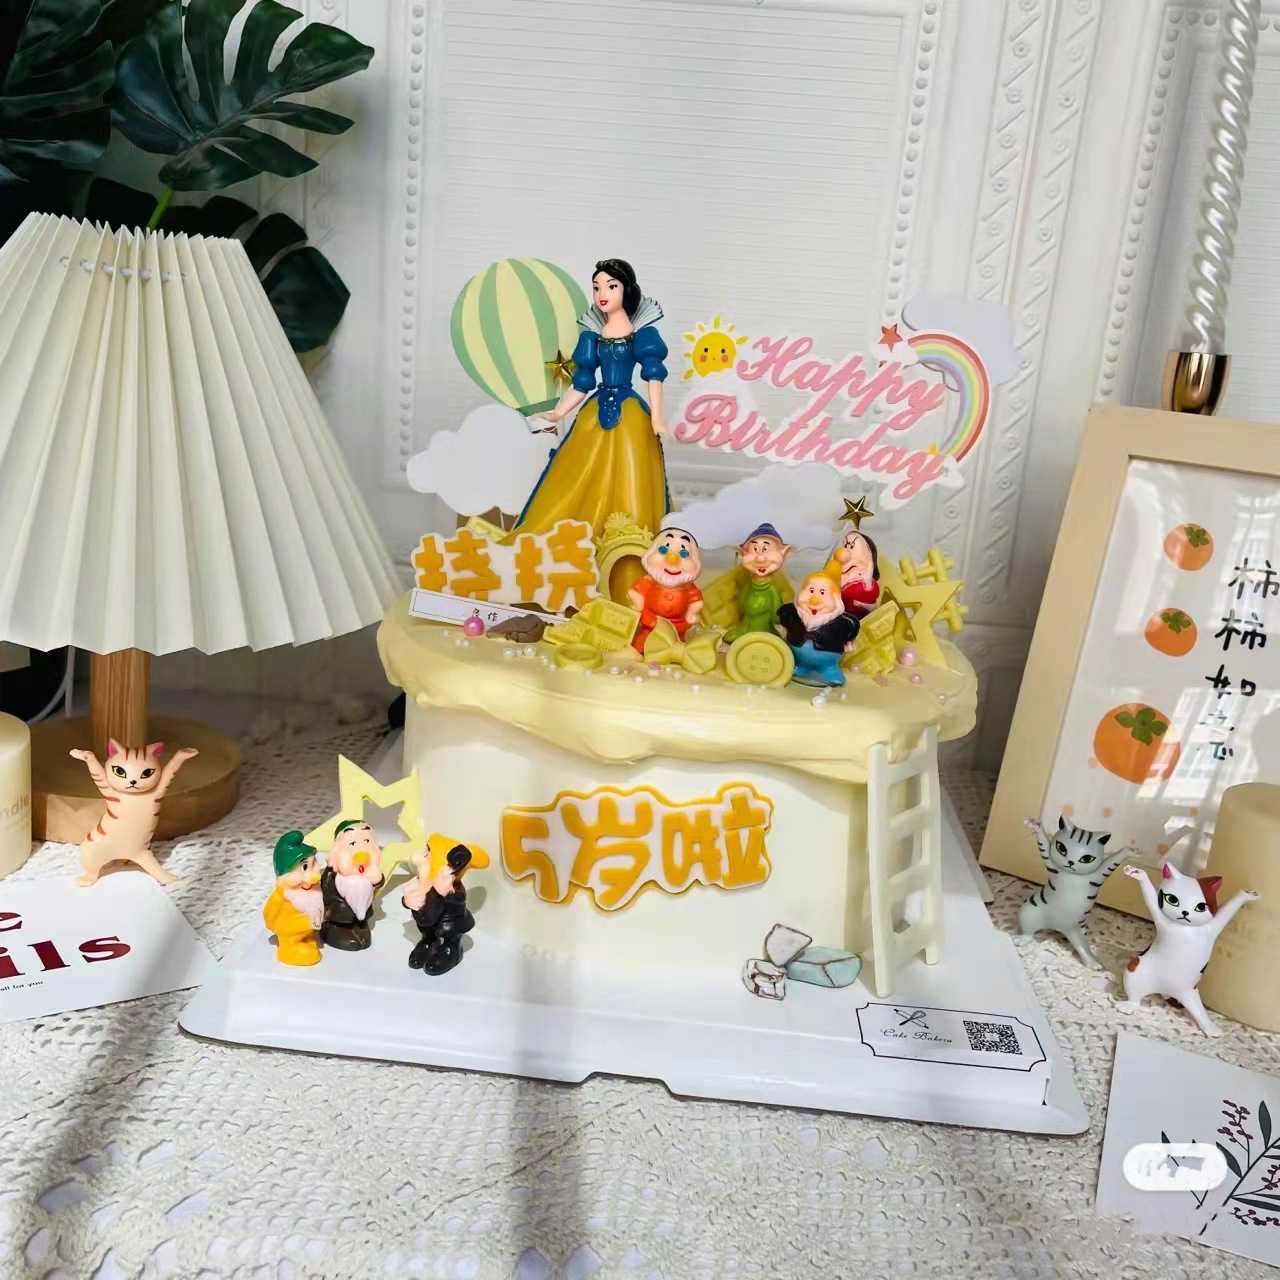 白雪公主与七个小矮人生日蛋糕装饰摆件情景烘焙摆件公仔造景玩具-阿里巴巴